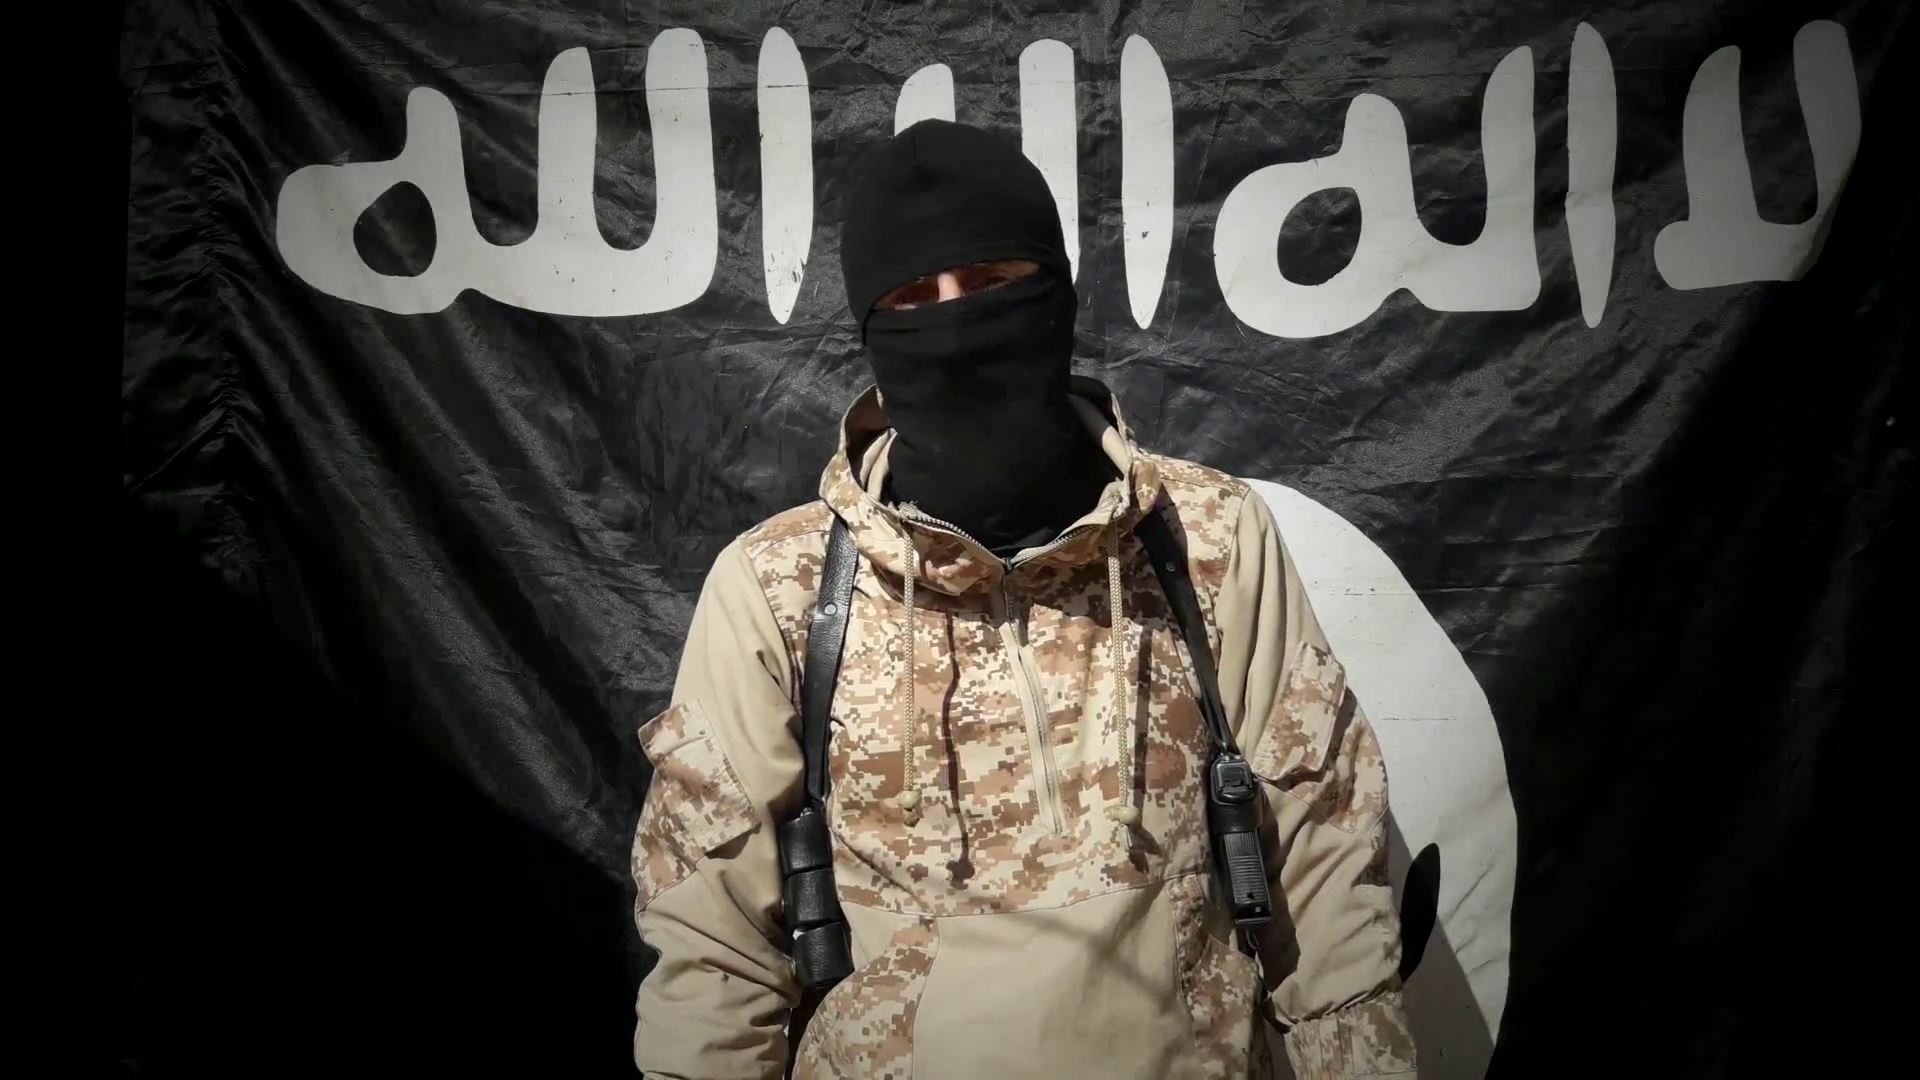 Инстаграмм террориста. Муджахиды Исламского государства. Одежда террористов. Флаг ИГИЛ.